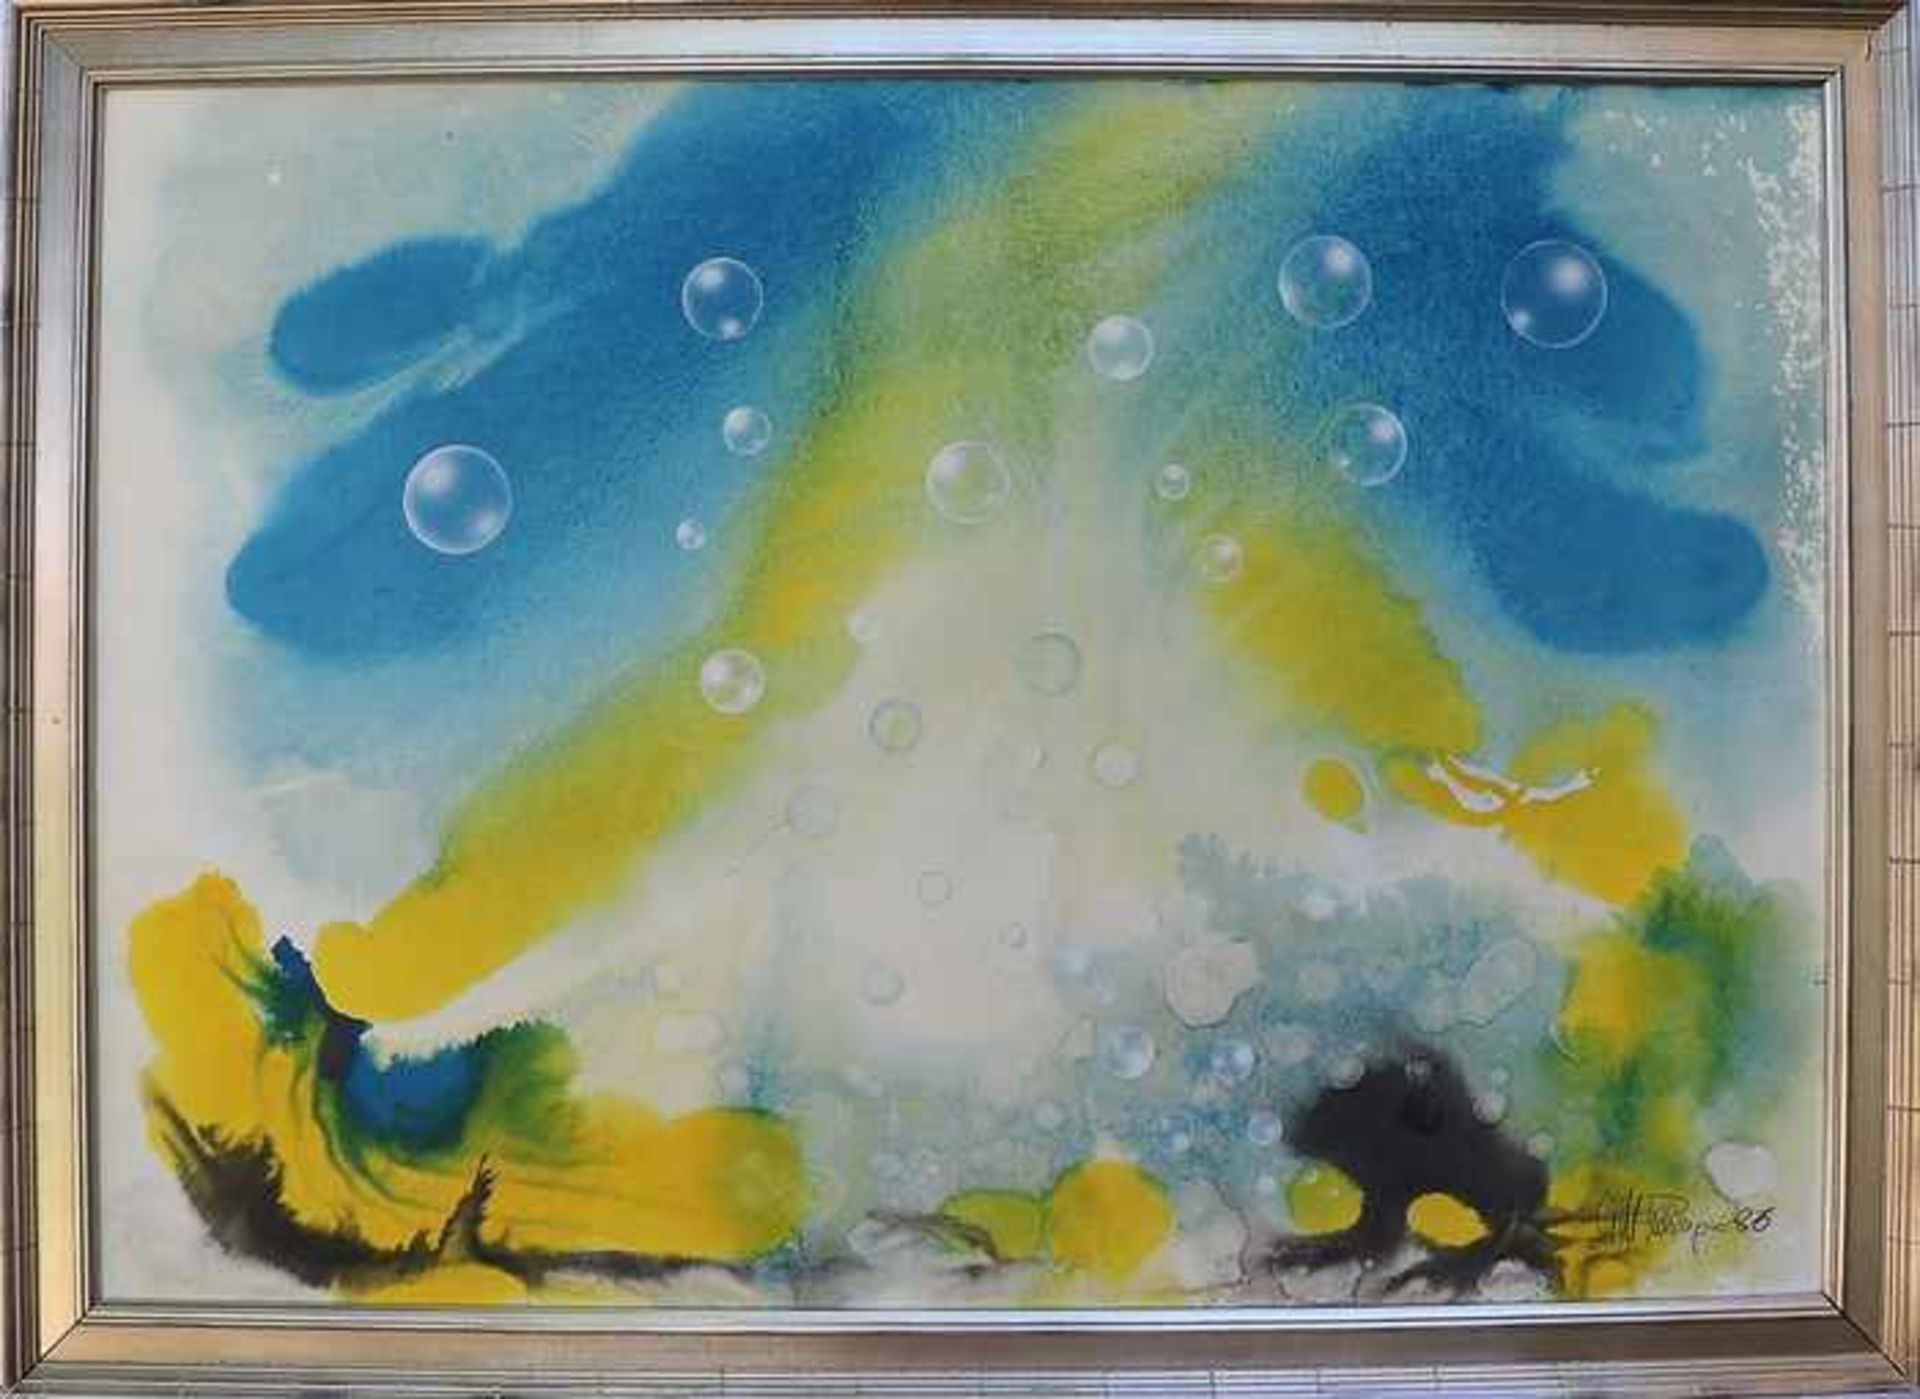 Unleserlich signiertwohl russischer Künstler, "Luftblasen vor surrealer Landschaft", Mischtechnik/